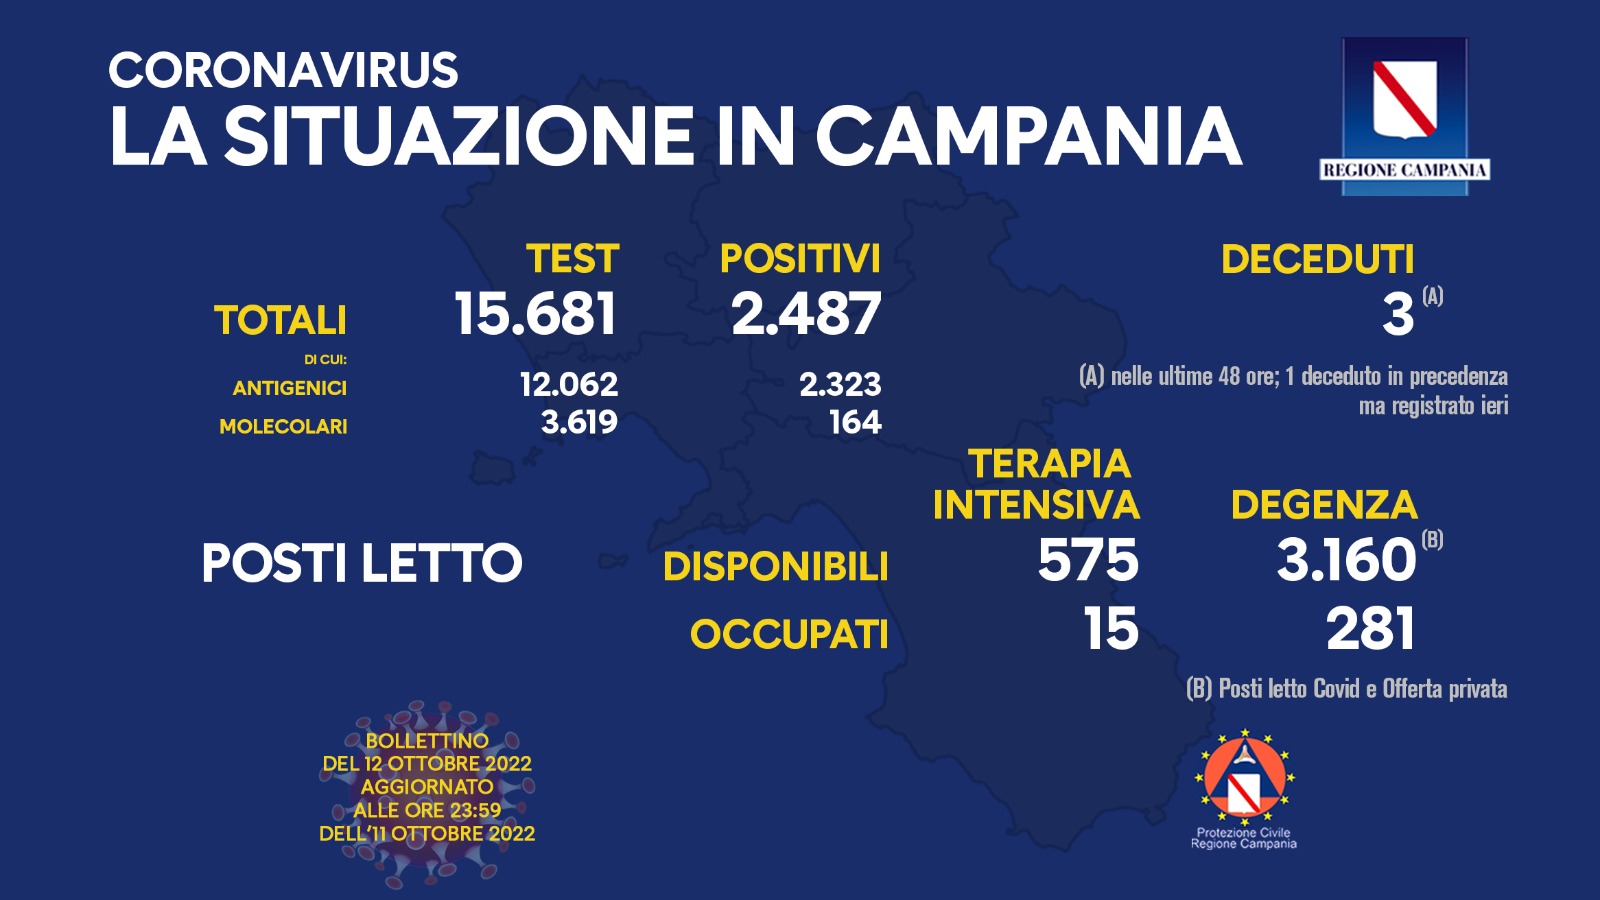 Covid 19 in Campania, bollettino 12 ottobre: 2.487 positivi